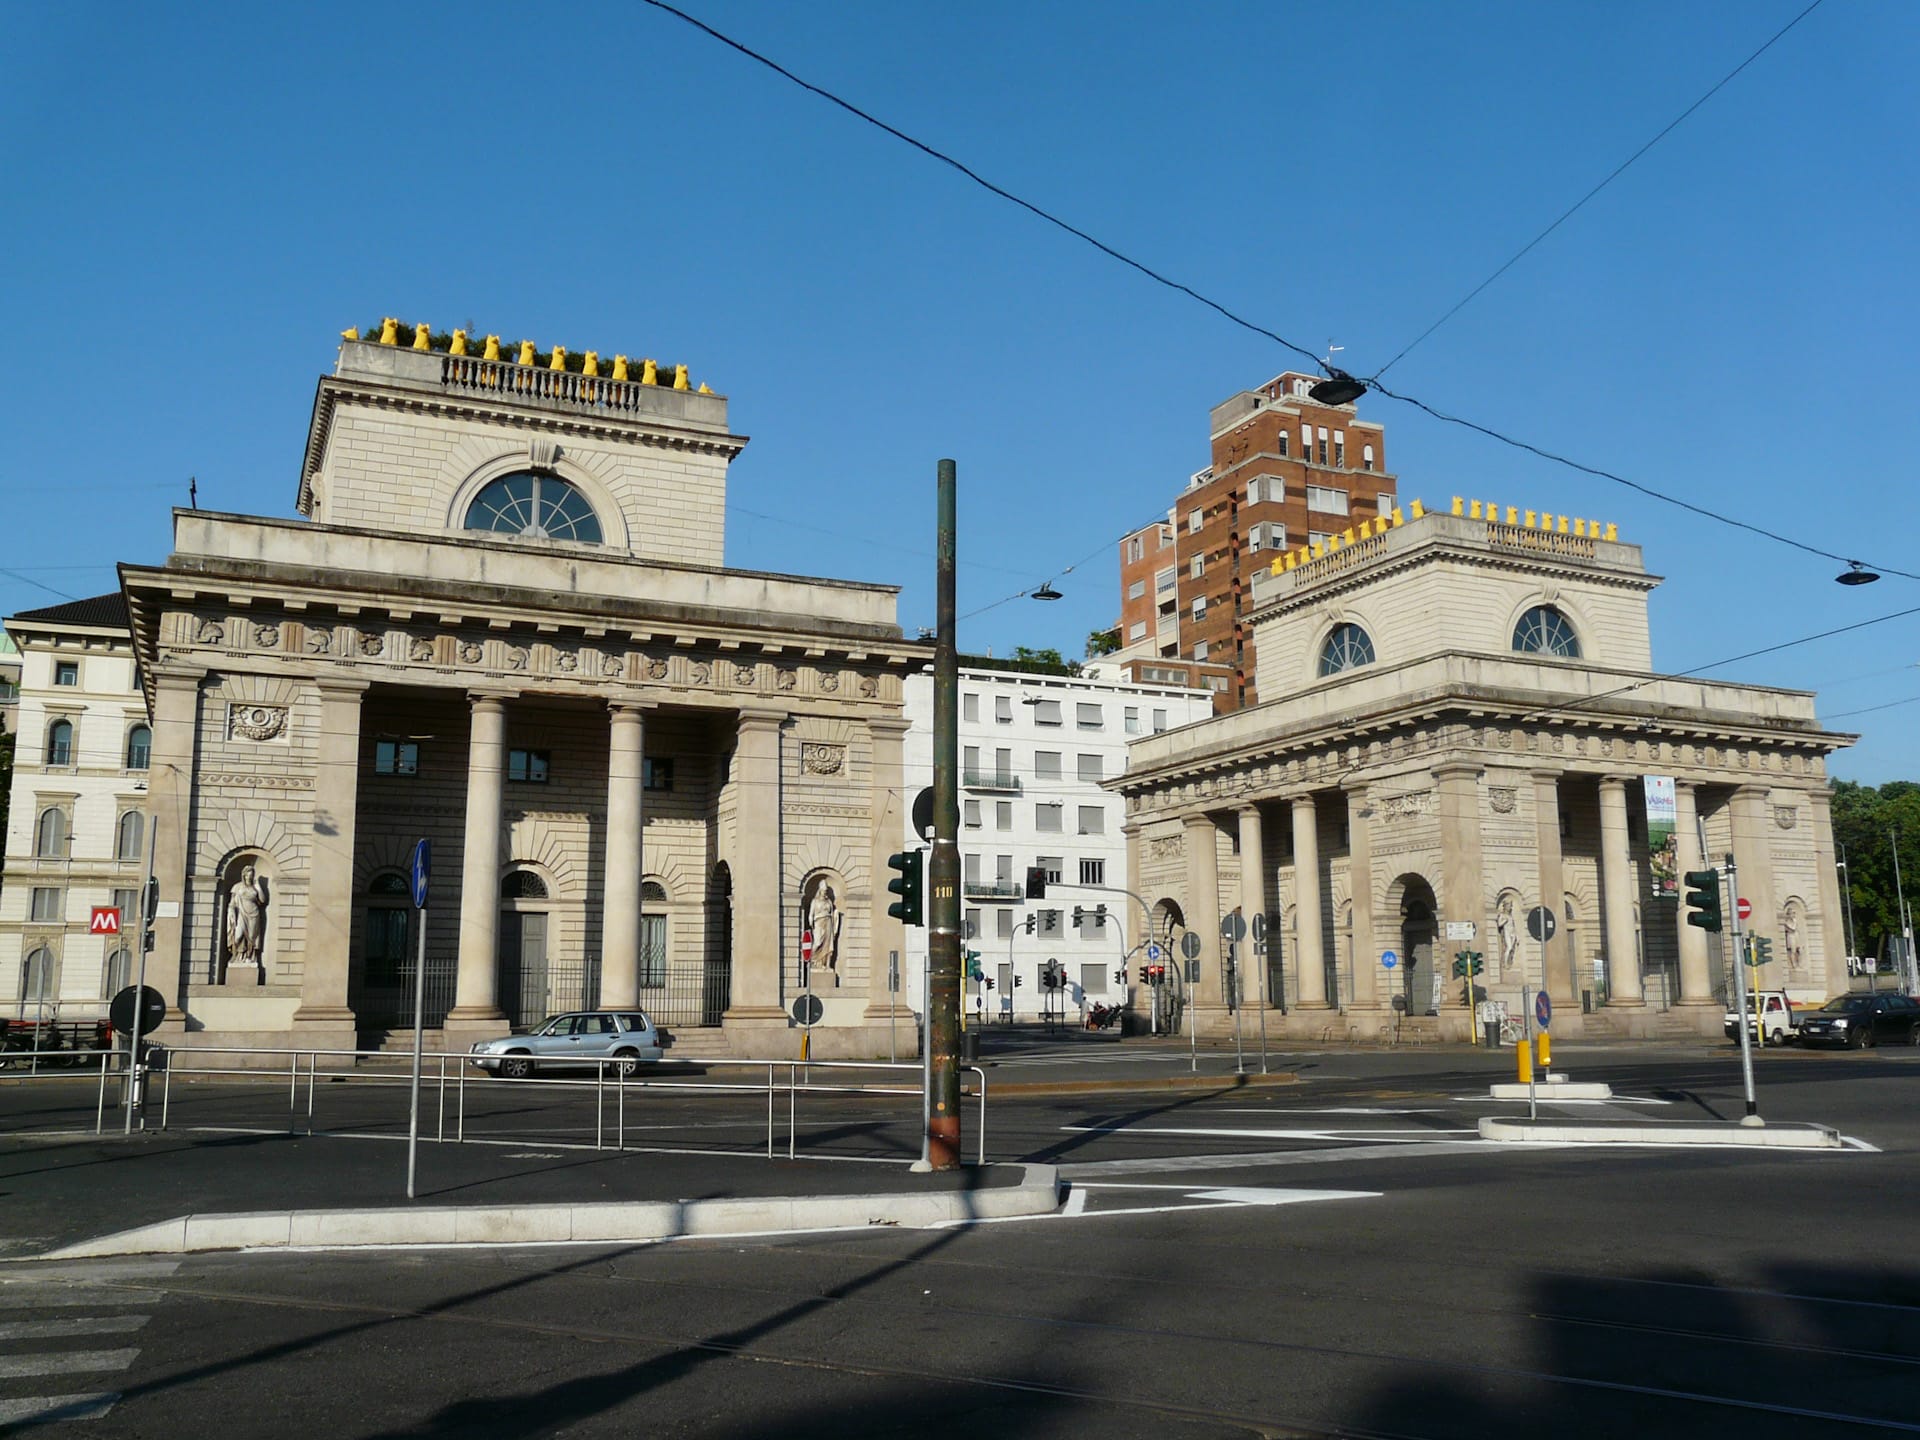 Conosciuta per la sua architettura Art Nouveau e la sua vita notturna LGBTQ+, Porta Venezia è un'ottima località per i turisti di Milano.